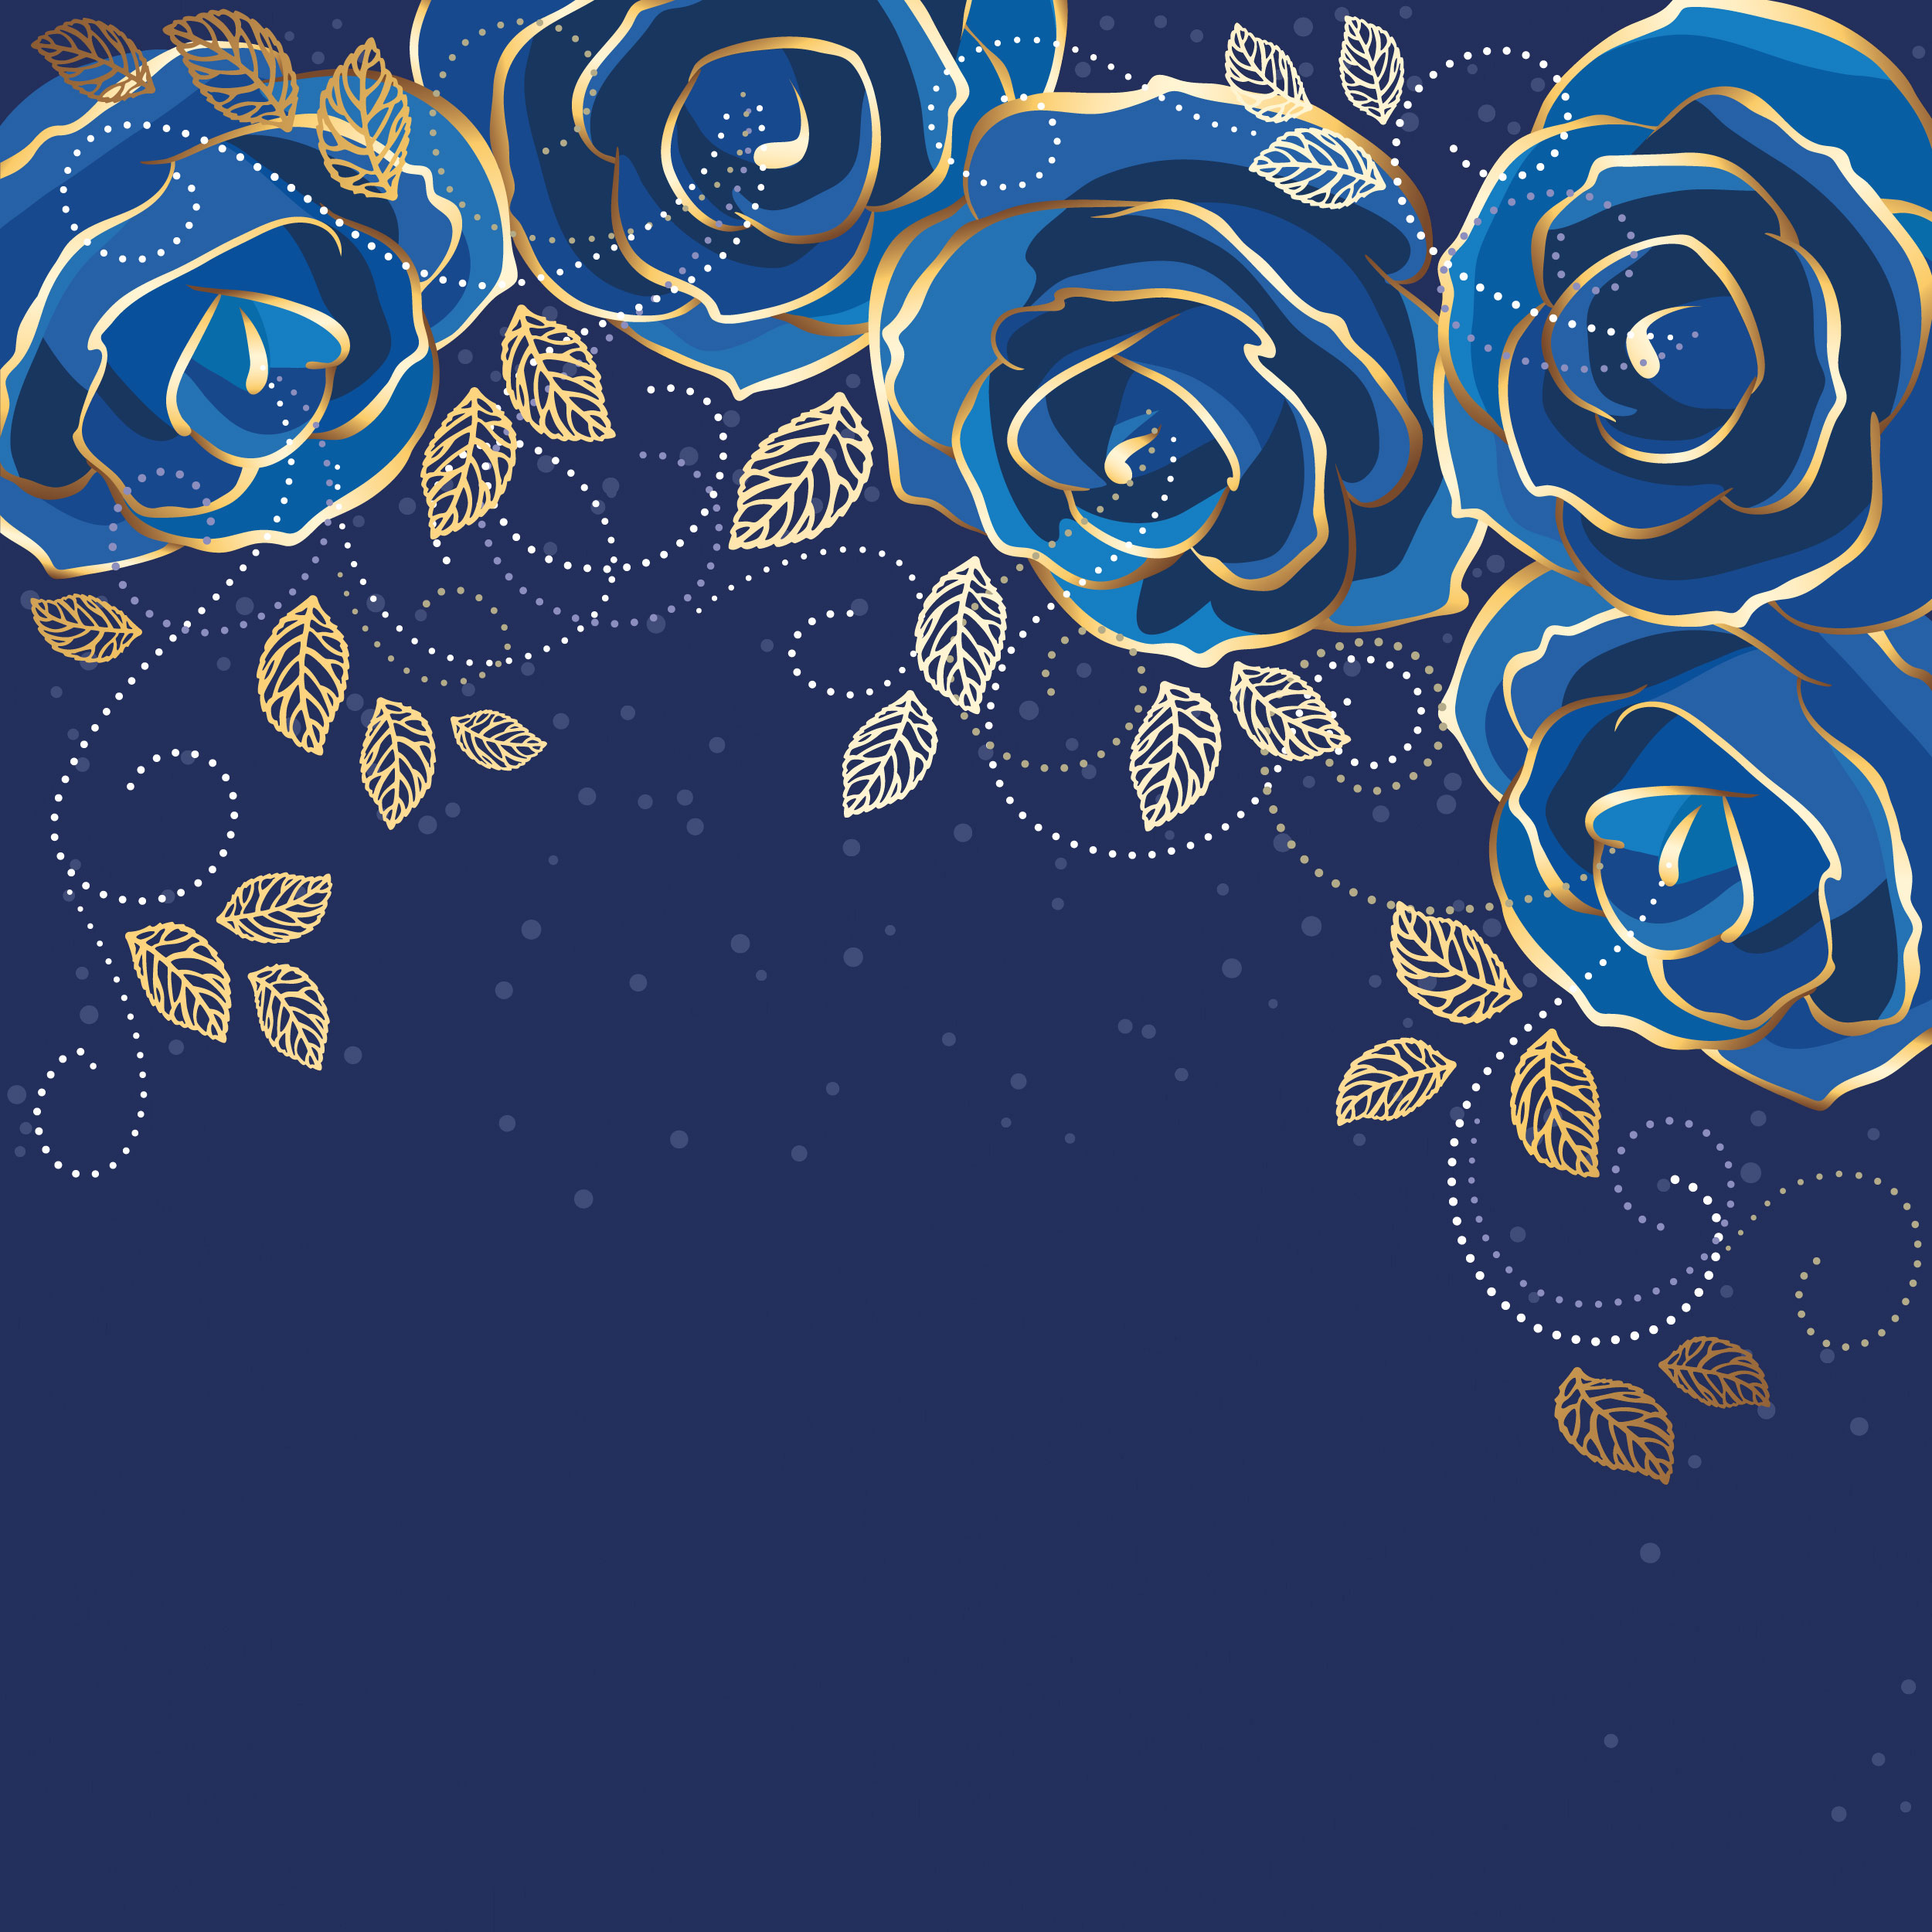 花のイラスト フリー素材 壁紙 背景no 284 青いバラ 金色葉